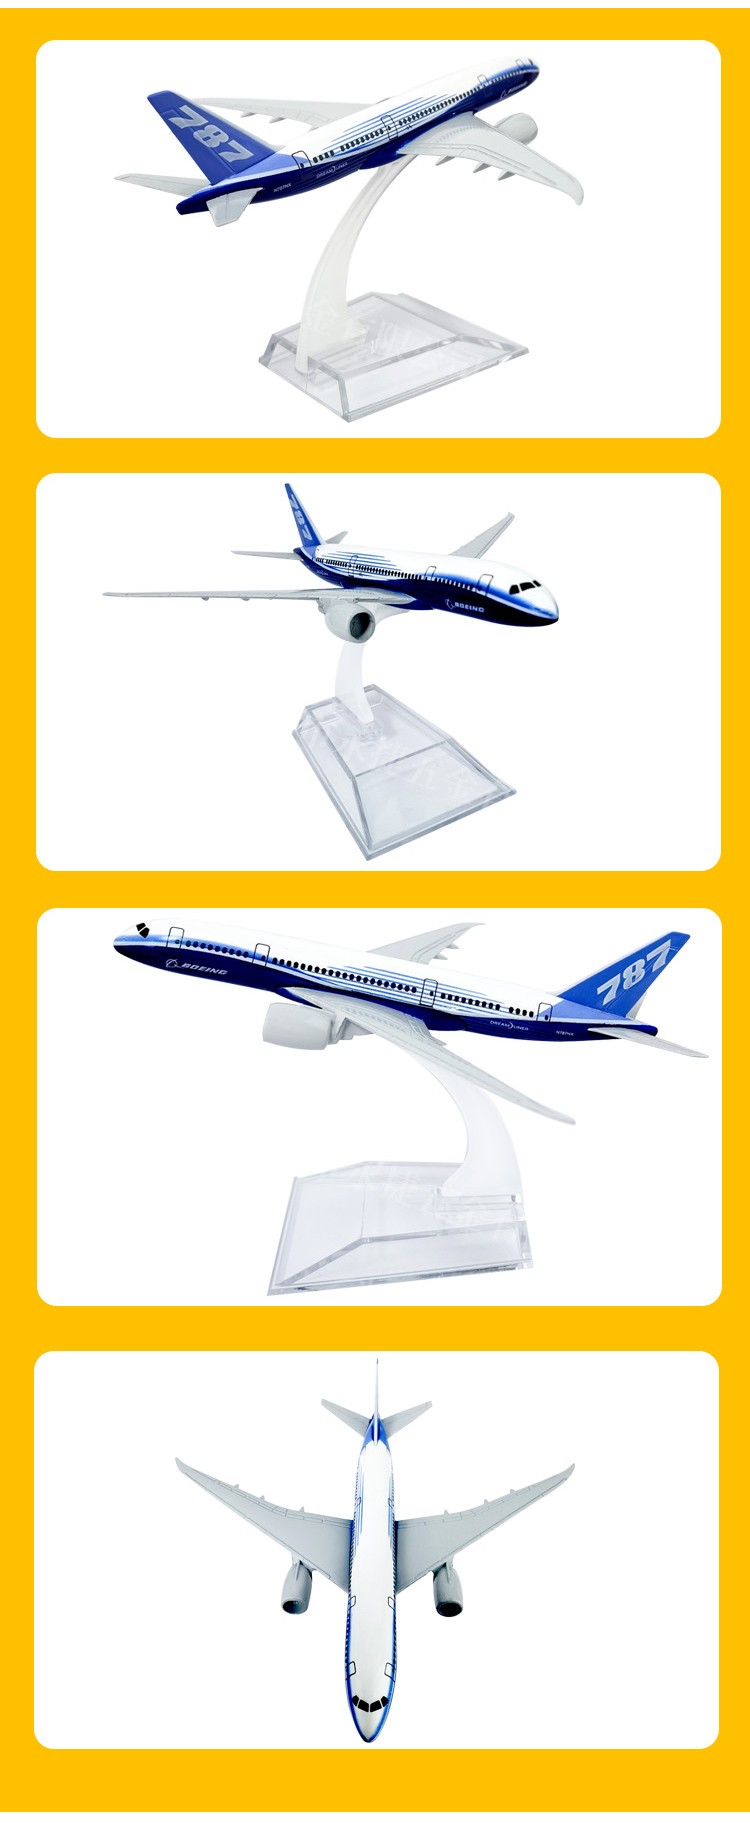 16cm仿真飞机模型摆件儿童玩具橱窗装饰品办公室摆件波音787原机型空客飞机详情图5